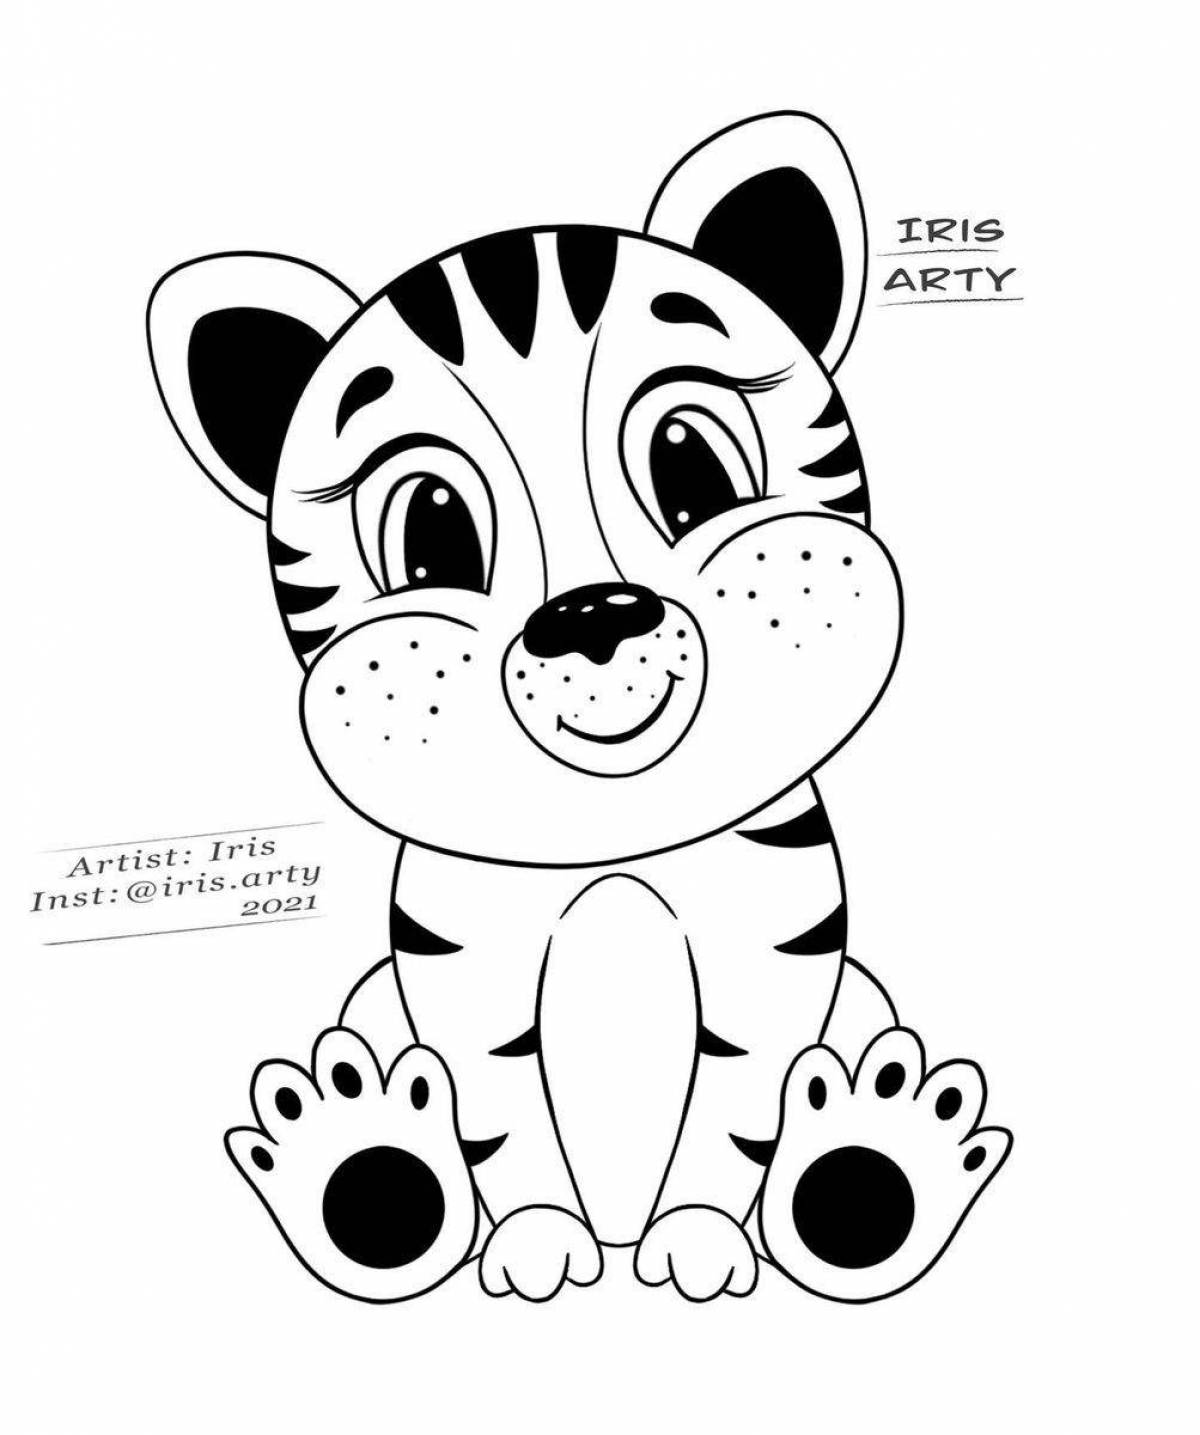 Cozy tiger coloring page